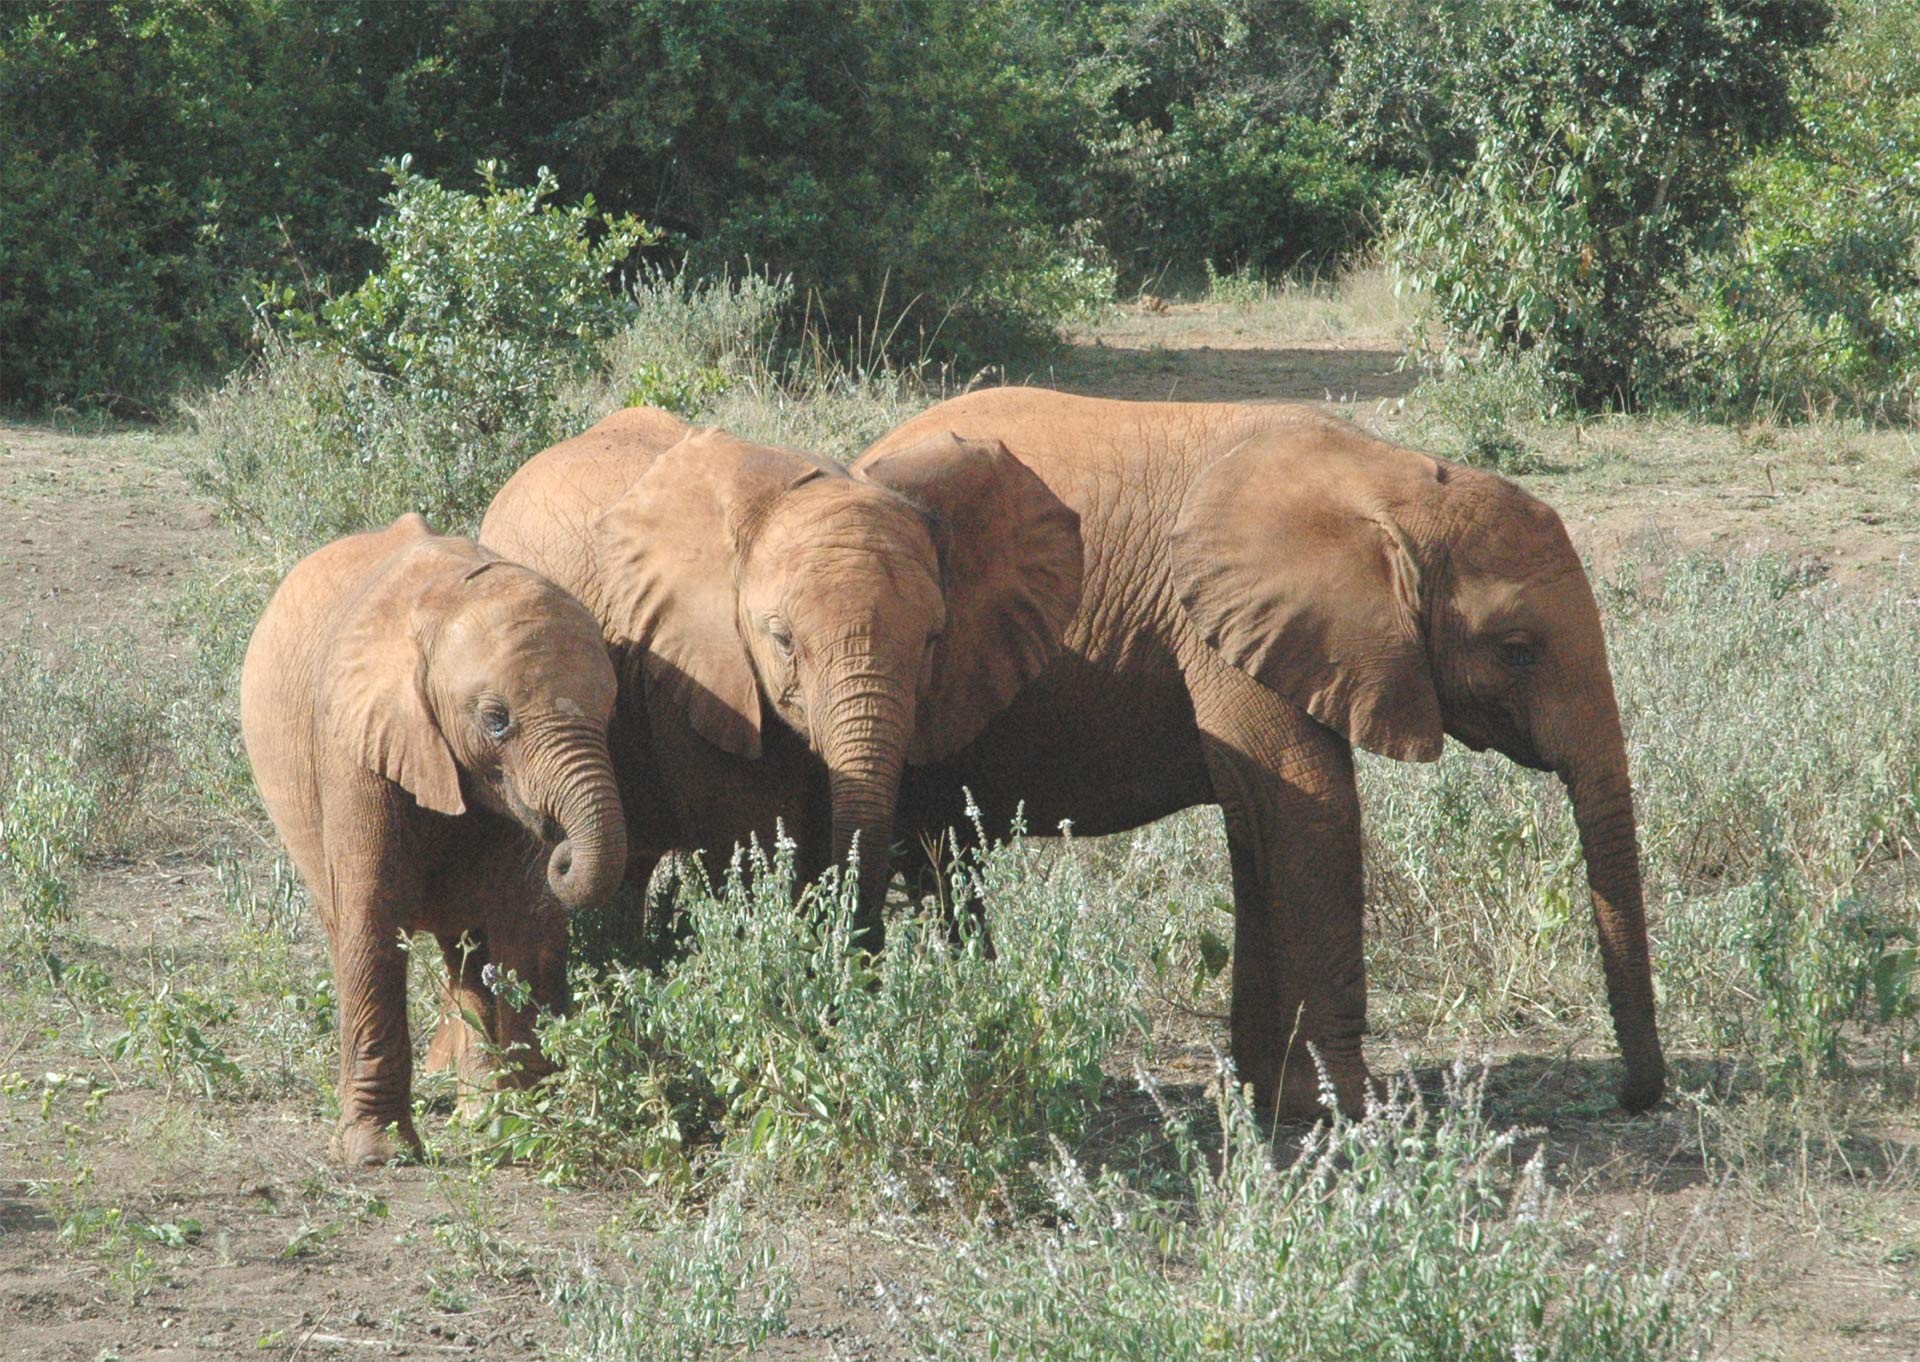 Elephants together in Kenya